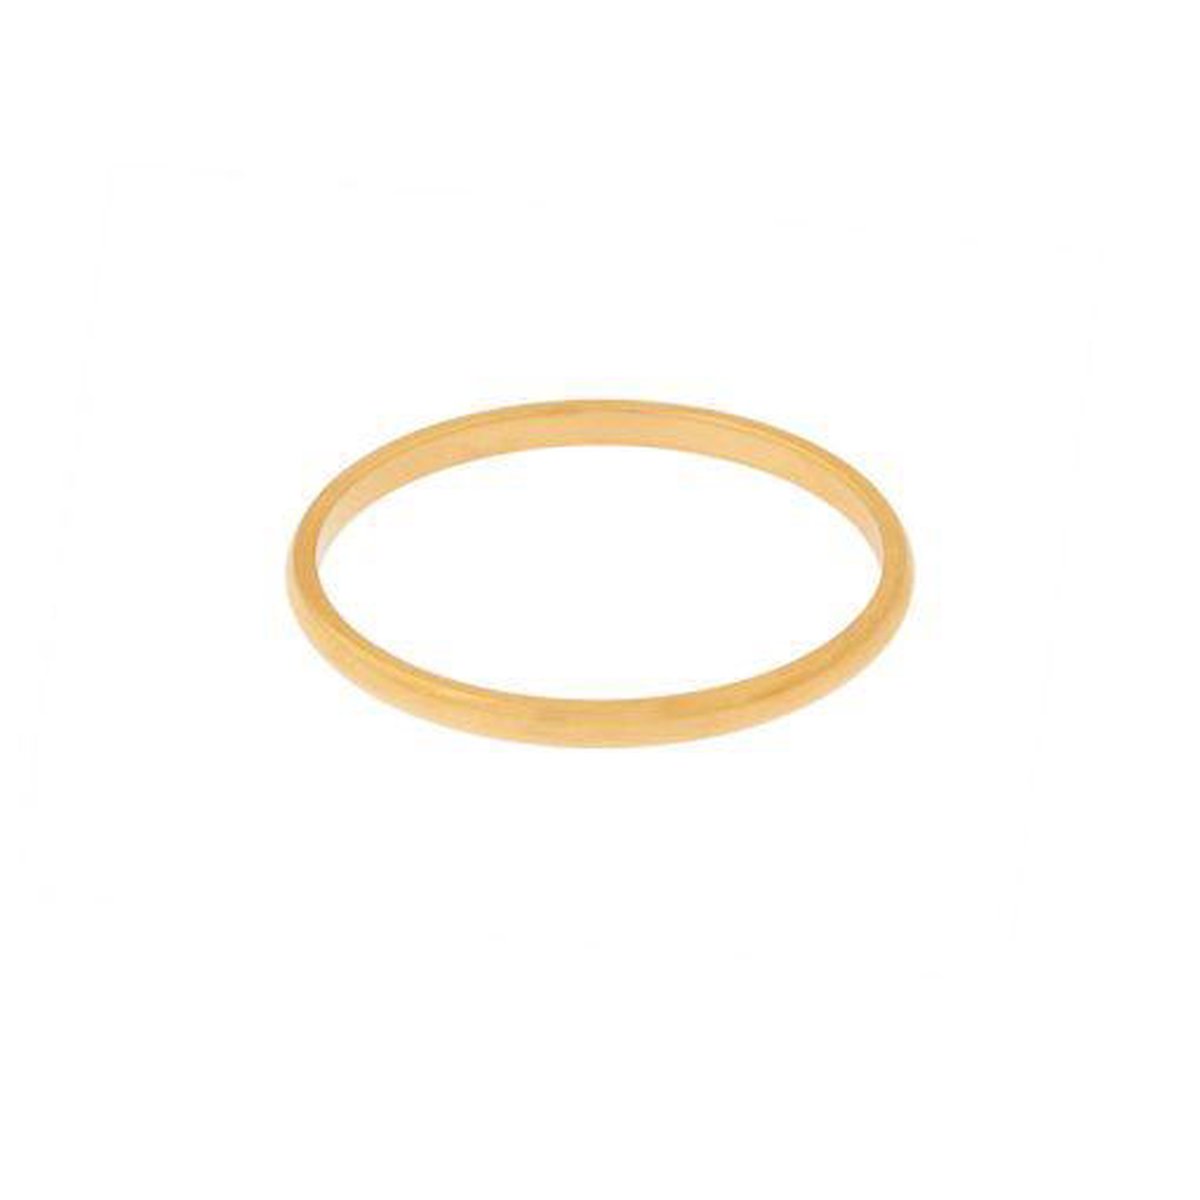 Ring basic rond smal - Maat 19 - Goud - Stainless steel (verkleurt niet)